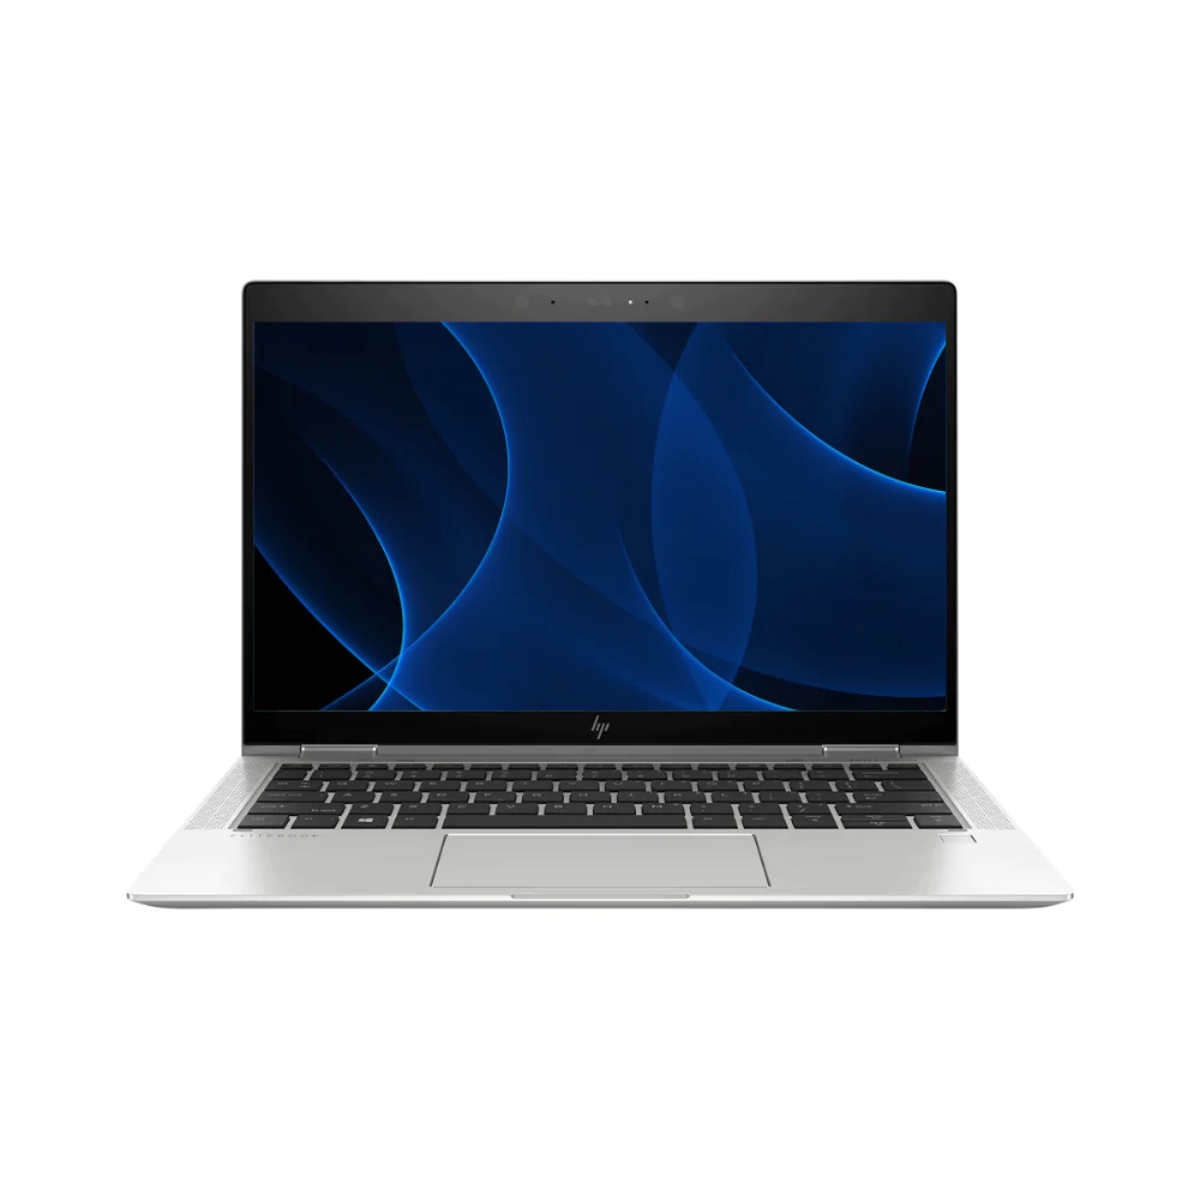 HP EliteBook x360 1030 G3 i5 (8350U) 16GB RAM 256GB SSD 13.3